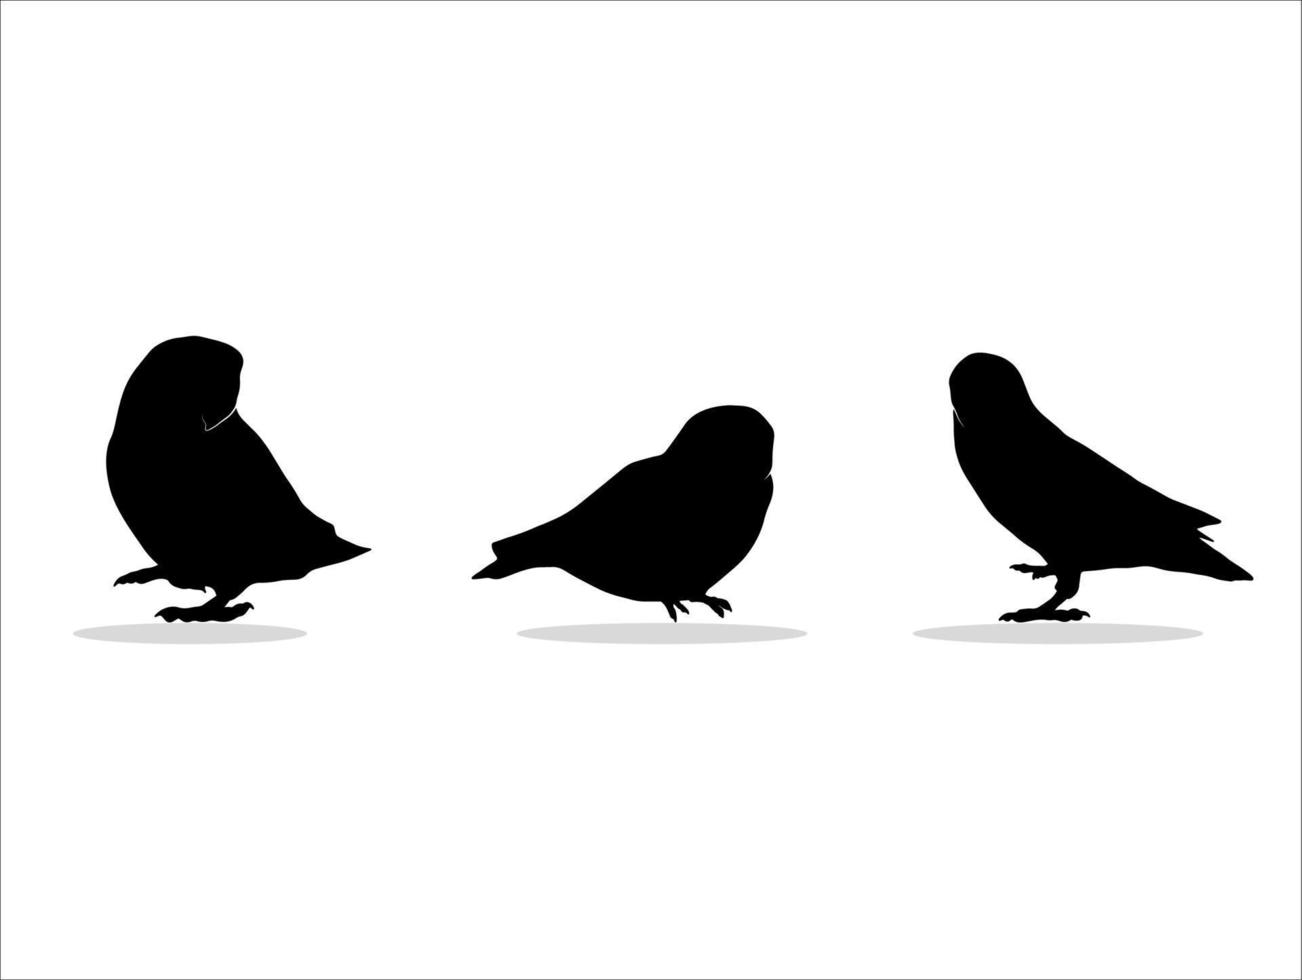 drei silhouette schwarze vogelillustrationen vektor